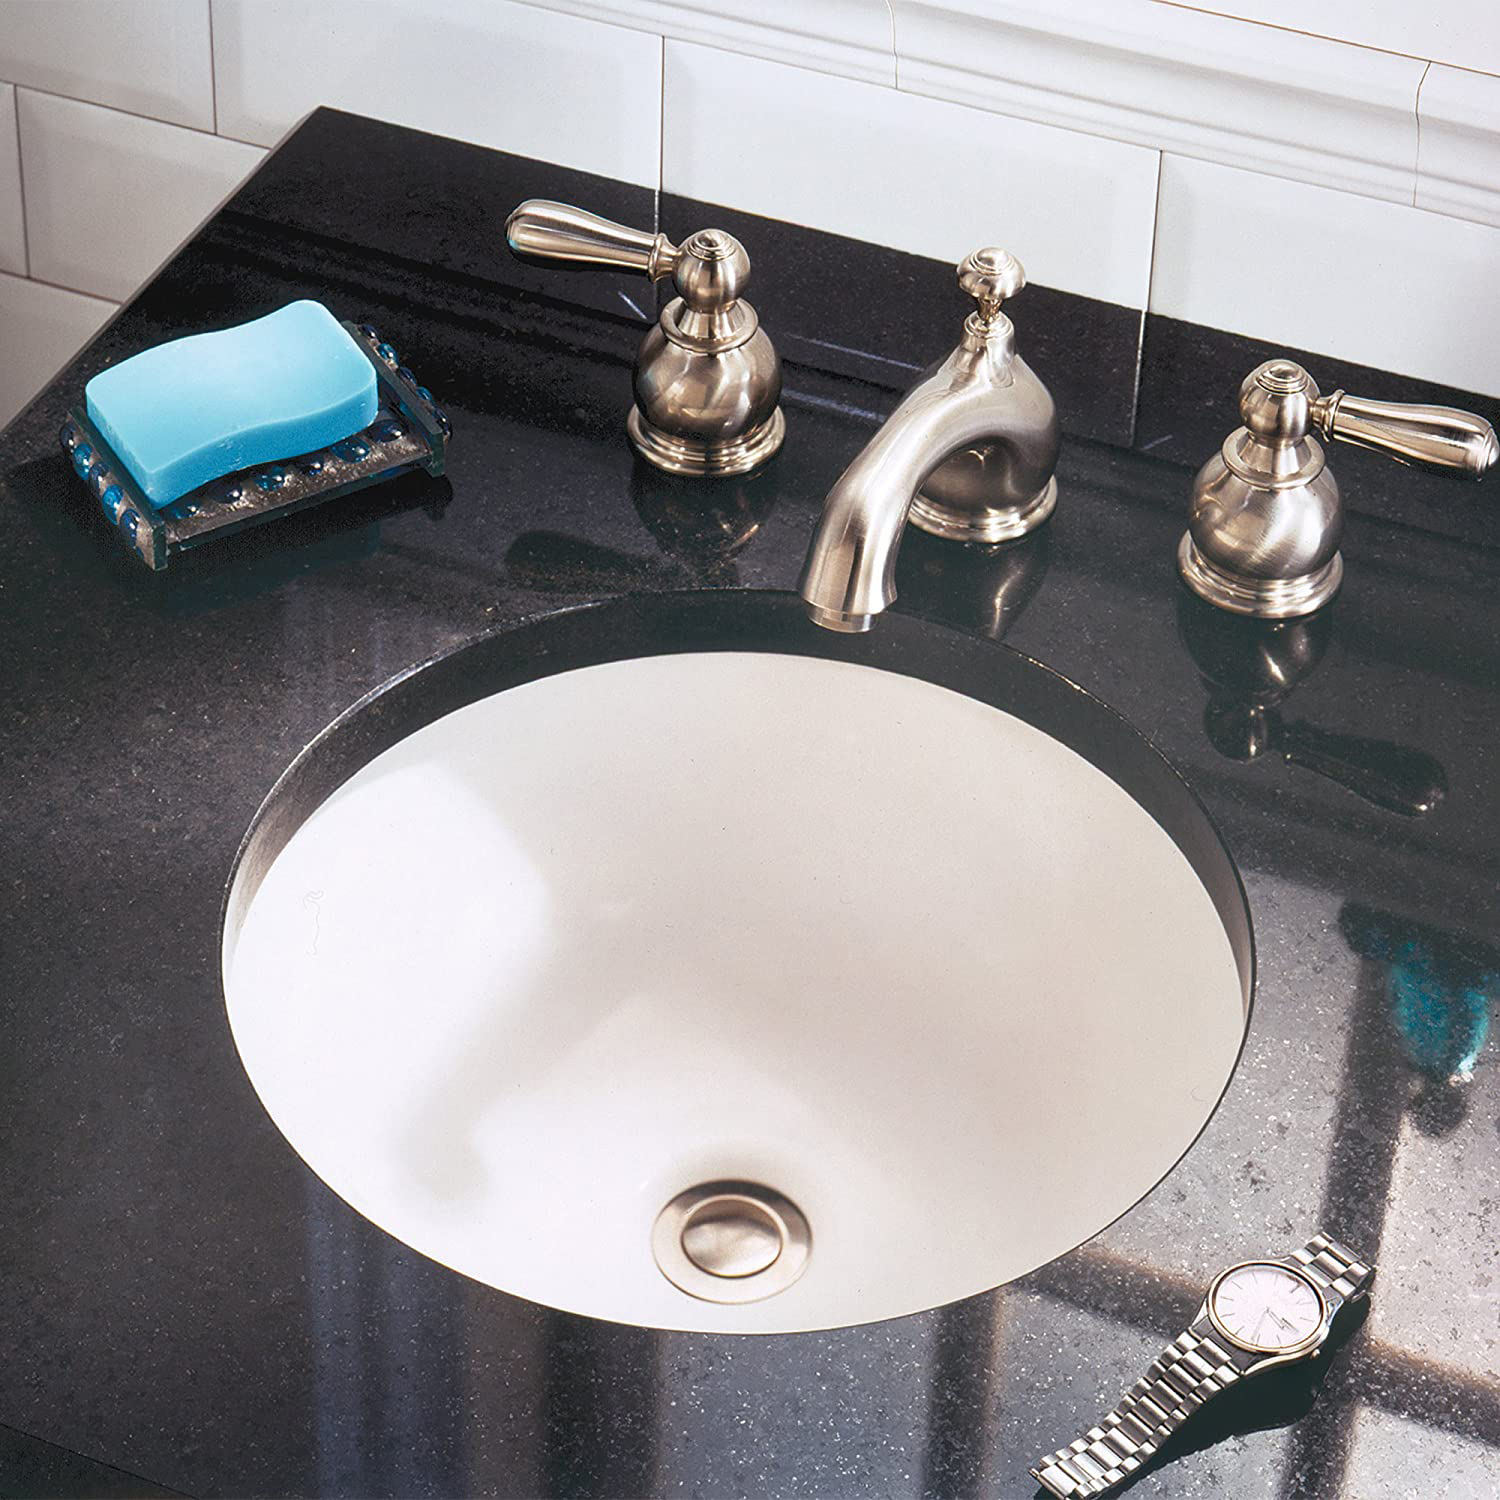 عالية الجودة الحمام جولة السيراميك حوض غسيل بسيط OEM بالوعة الحمام Undermount